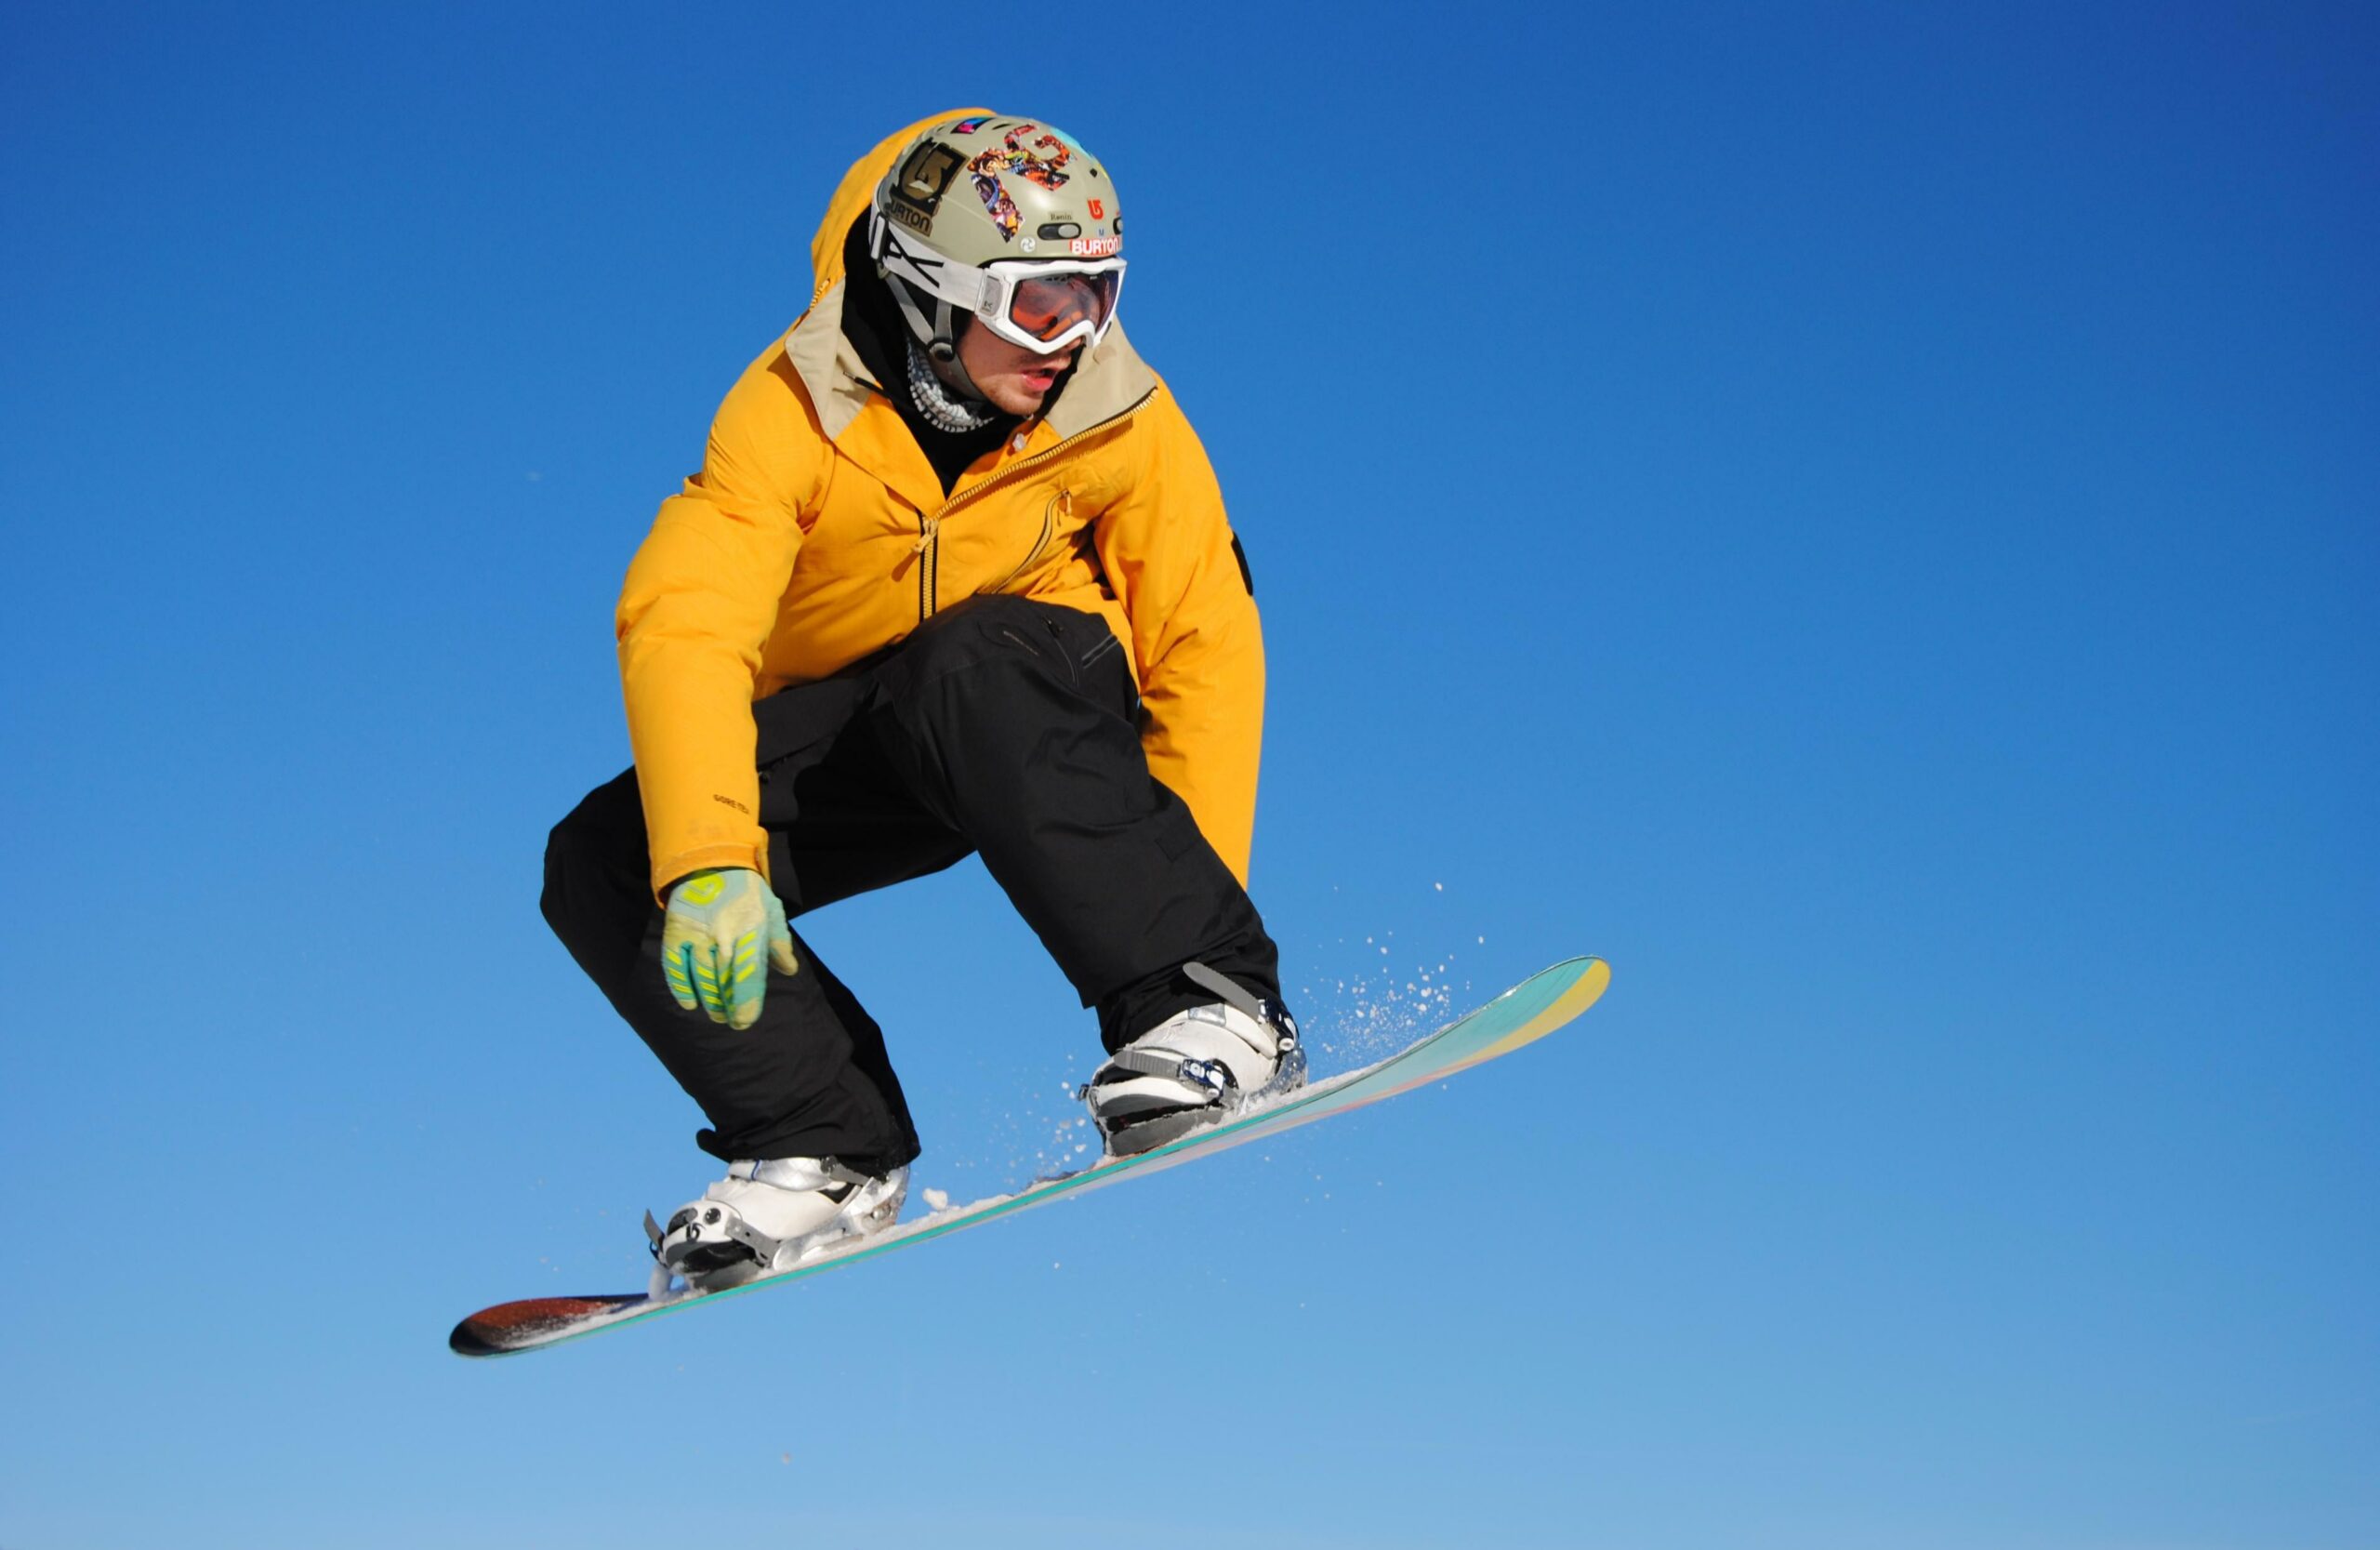 Homme réalisant un saut en snowboard